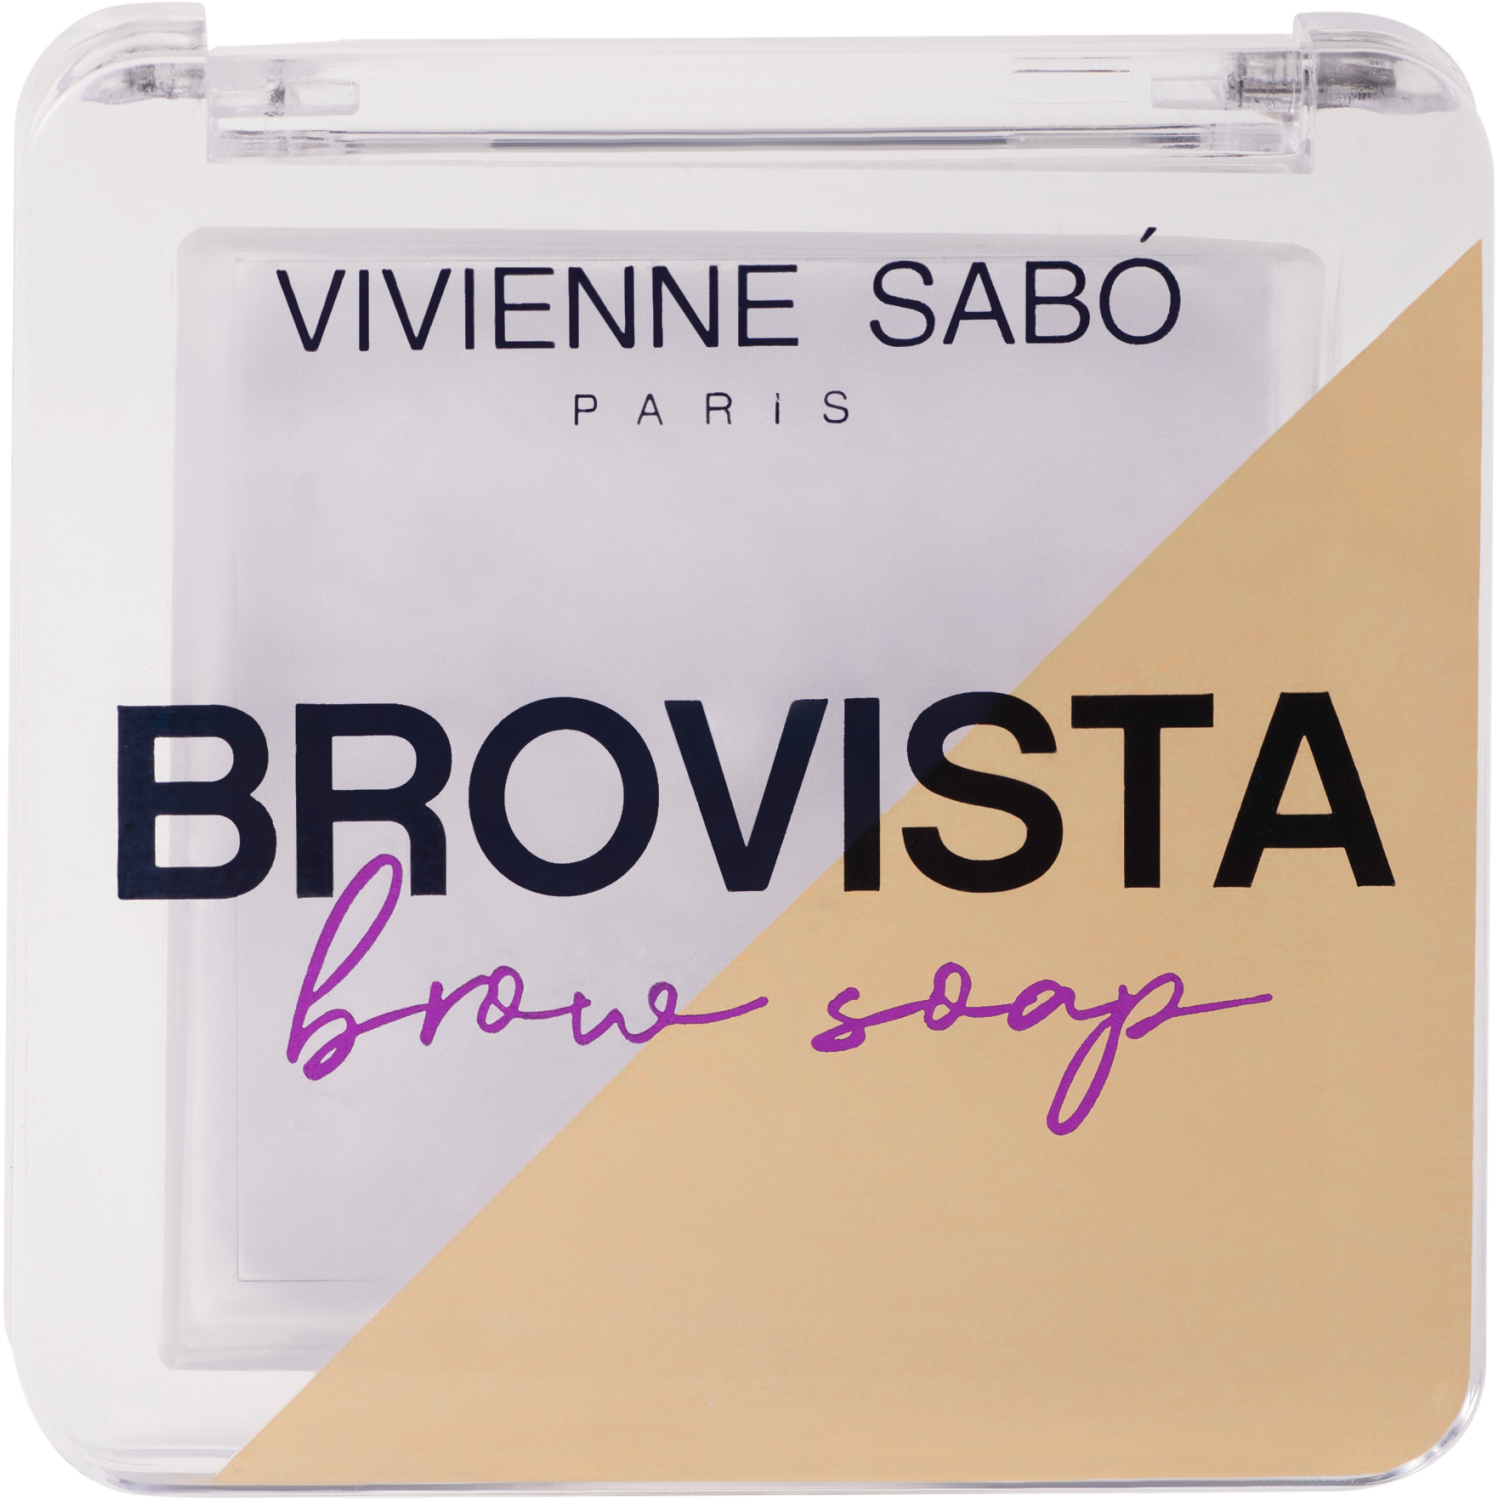 Фиксатор для бровей Vivienne Sabo Brovista brow soap, эффект ламинирования бровей, прозрачно-белесый, 3гр. тушь для бровей vivienne sabo brow mascara sourcils 01